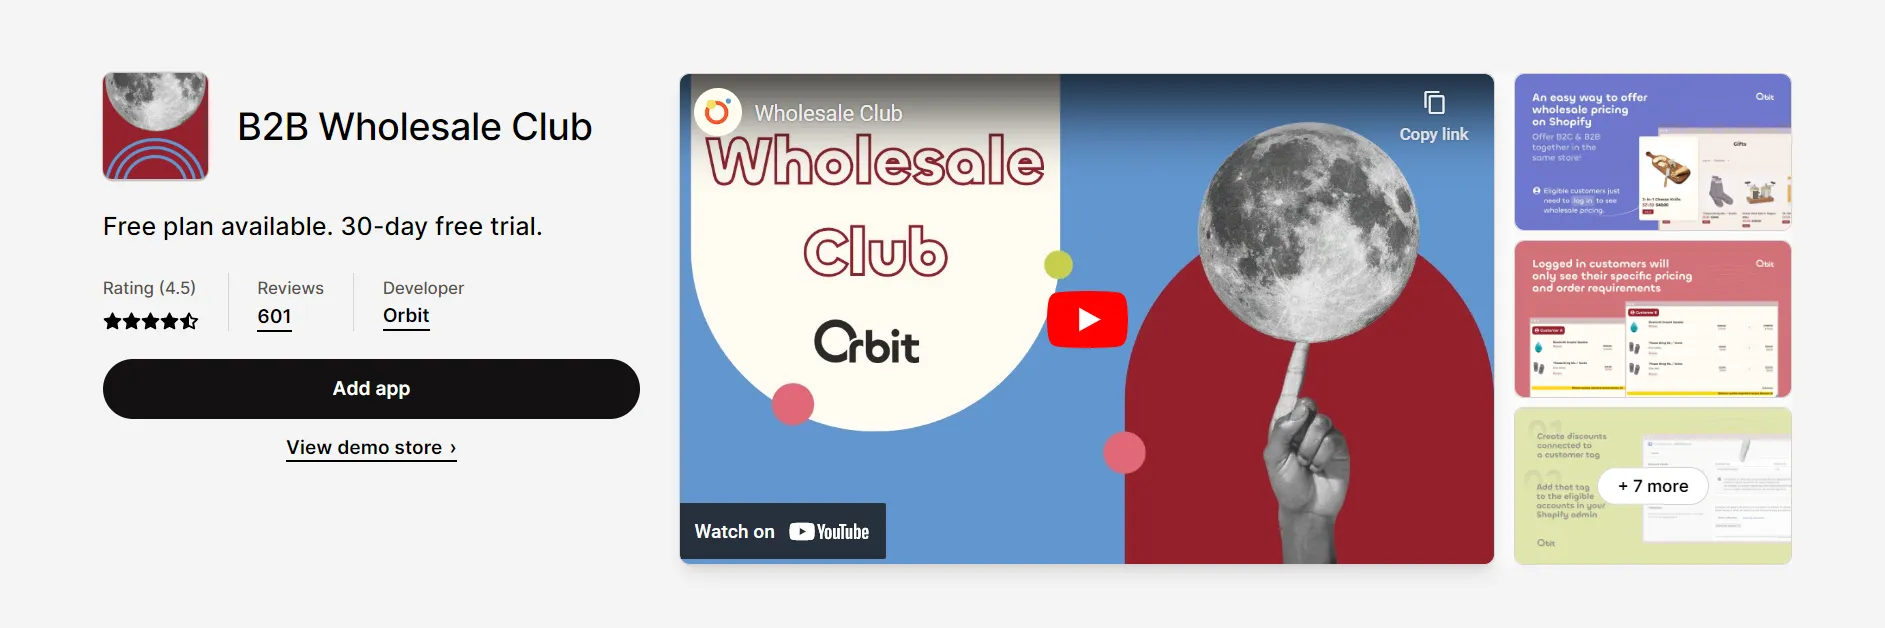 free shopify apps b2b wholesale club